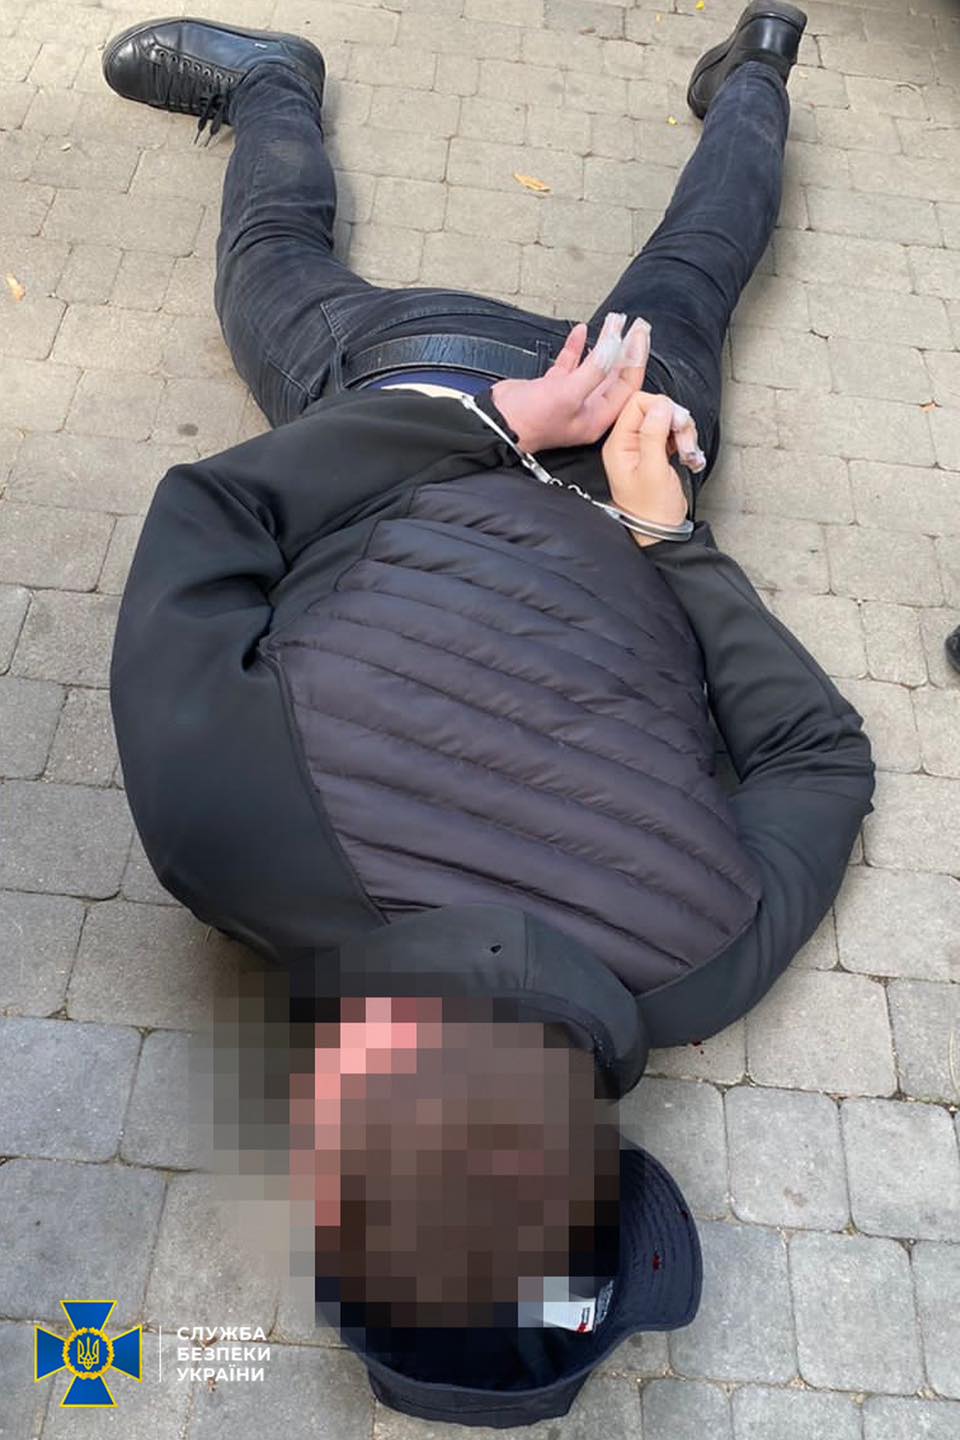 Серед затриманих – діючий правоохоронець Одеської області: СБУ знешкодила угруповання підсанкційного «злодія в законі» на прізвисько «Антимос»